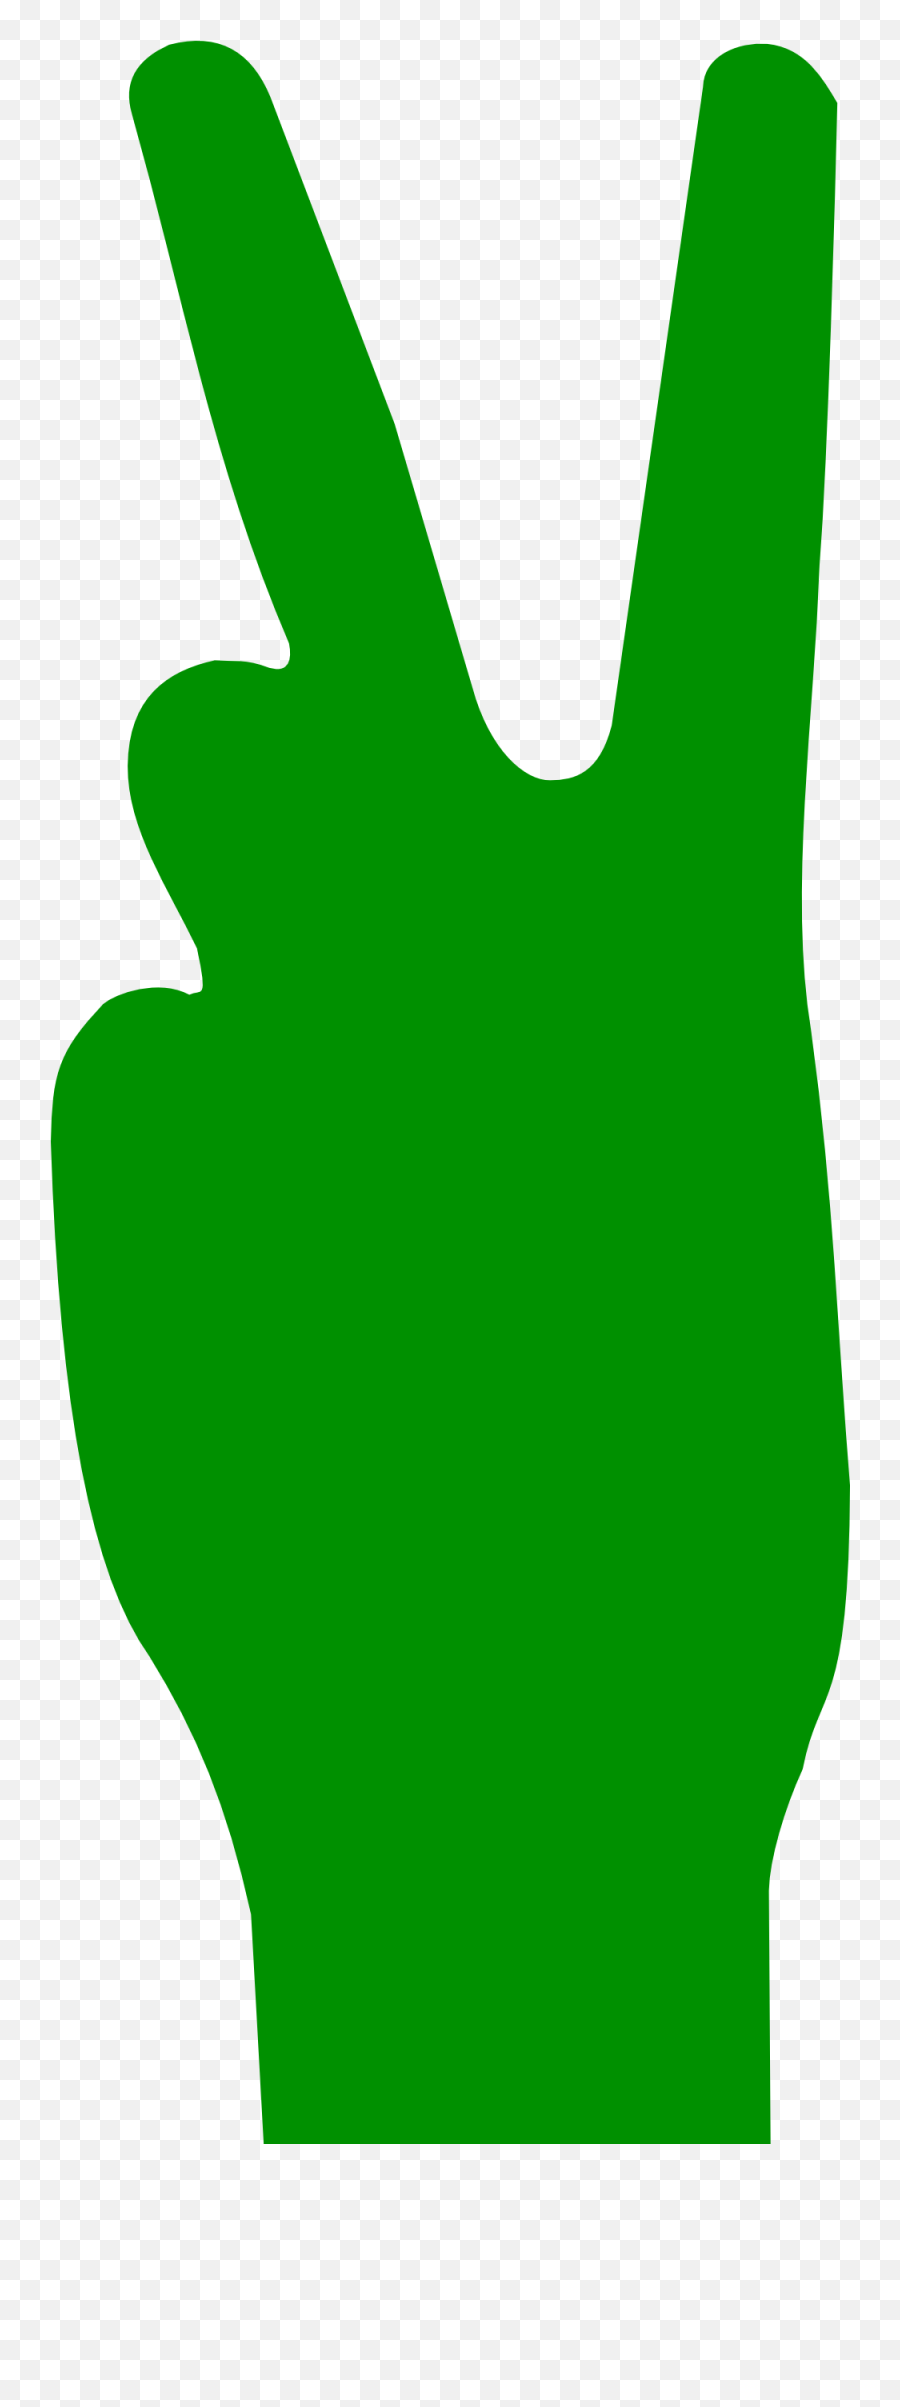 Green V Sign Clipart Free Image Download - Red V Emoji,V Clipart